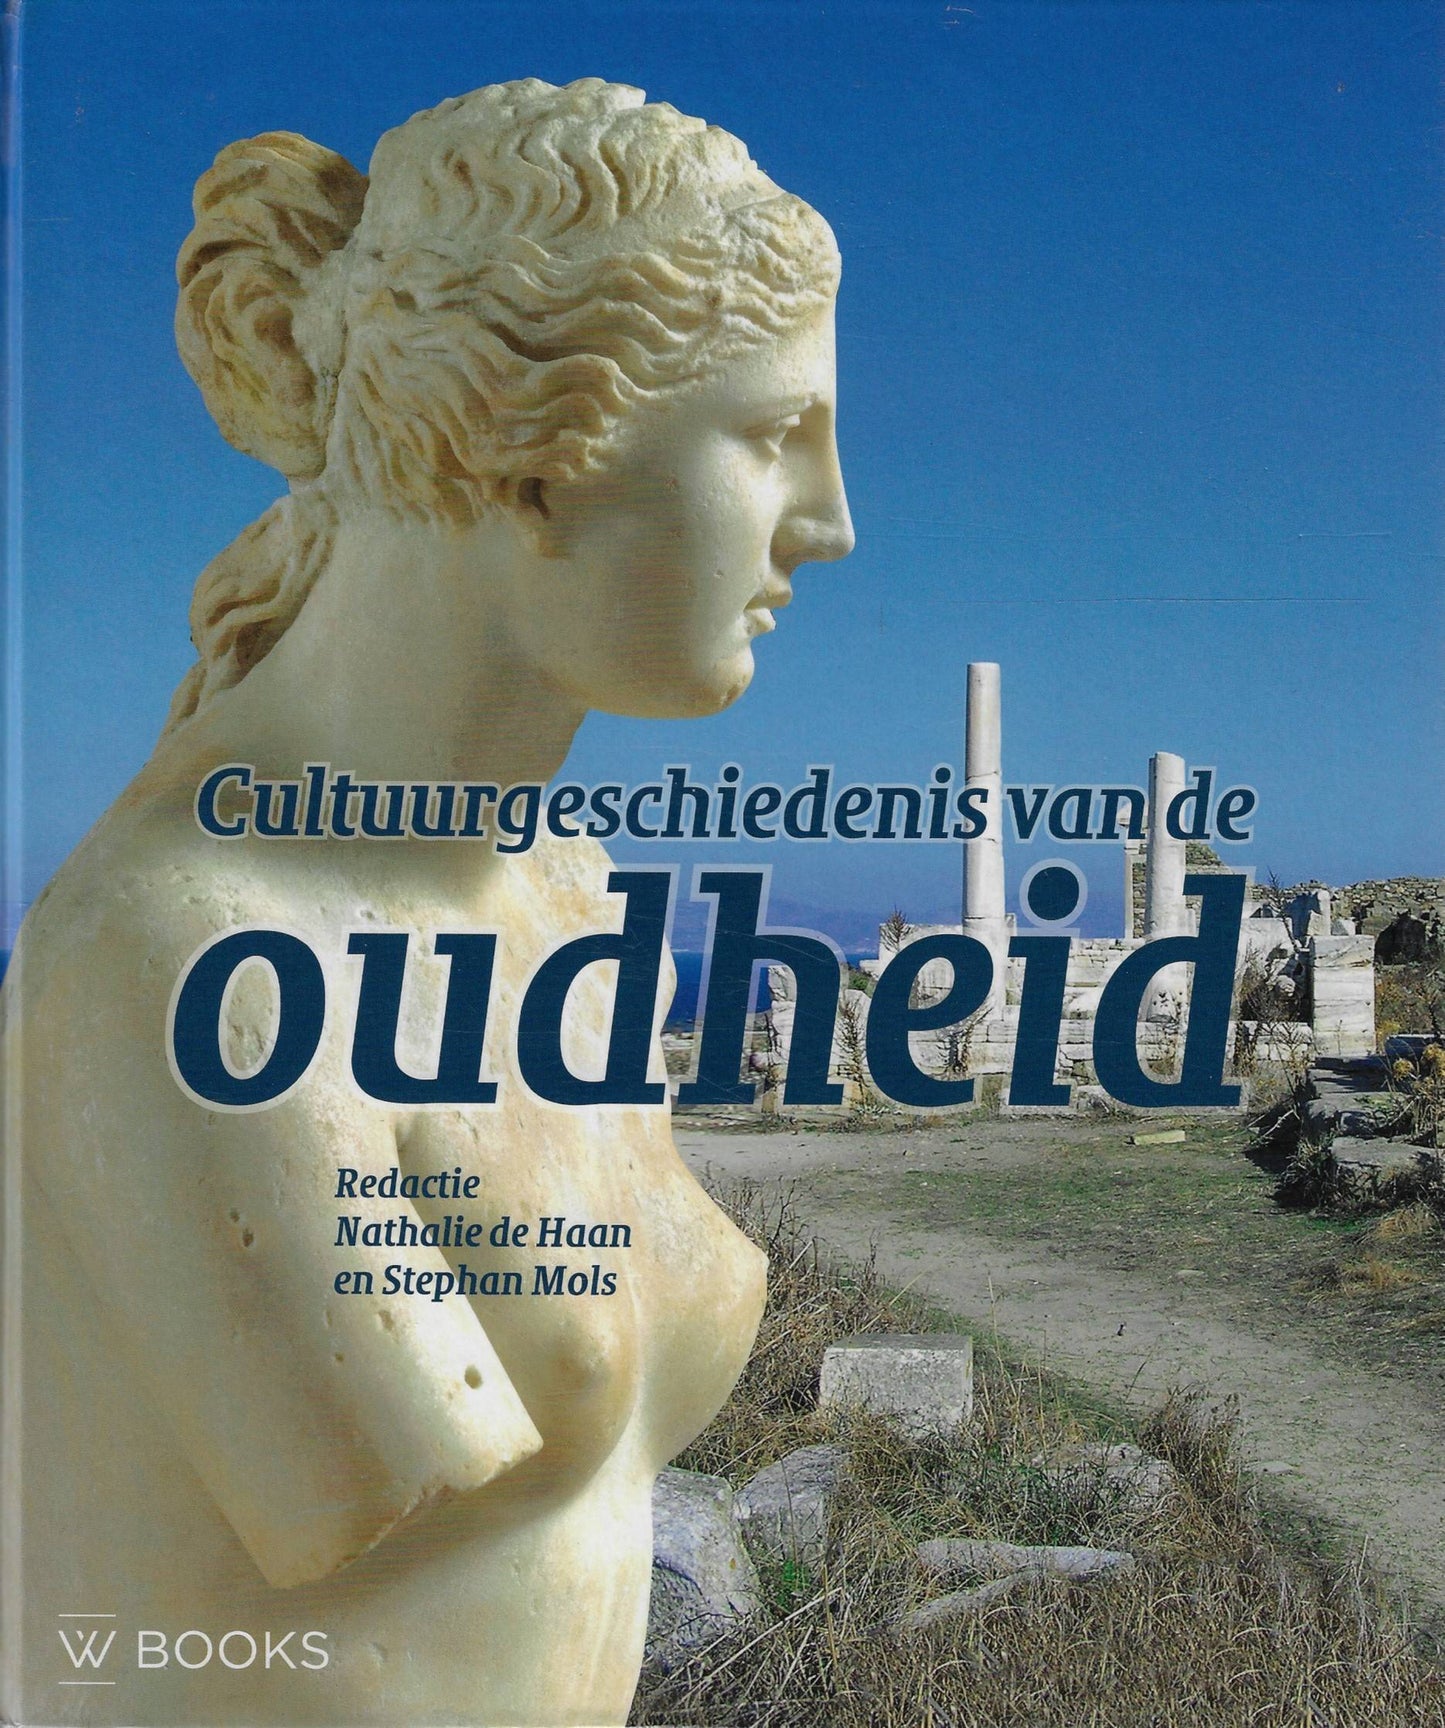 Cultuurgeschiedenis van de oudheid